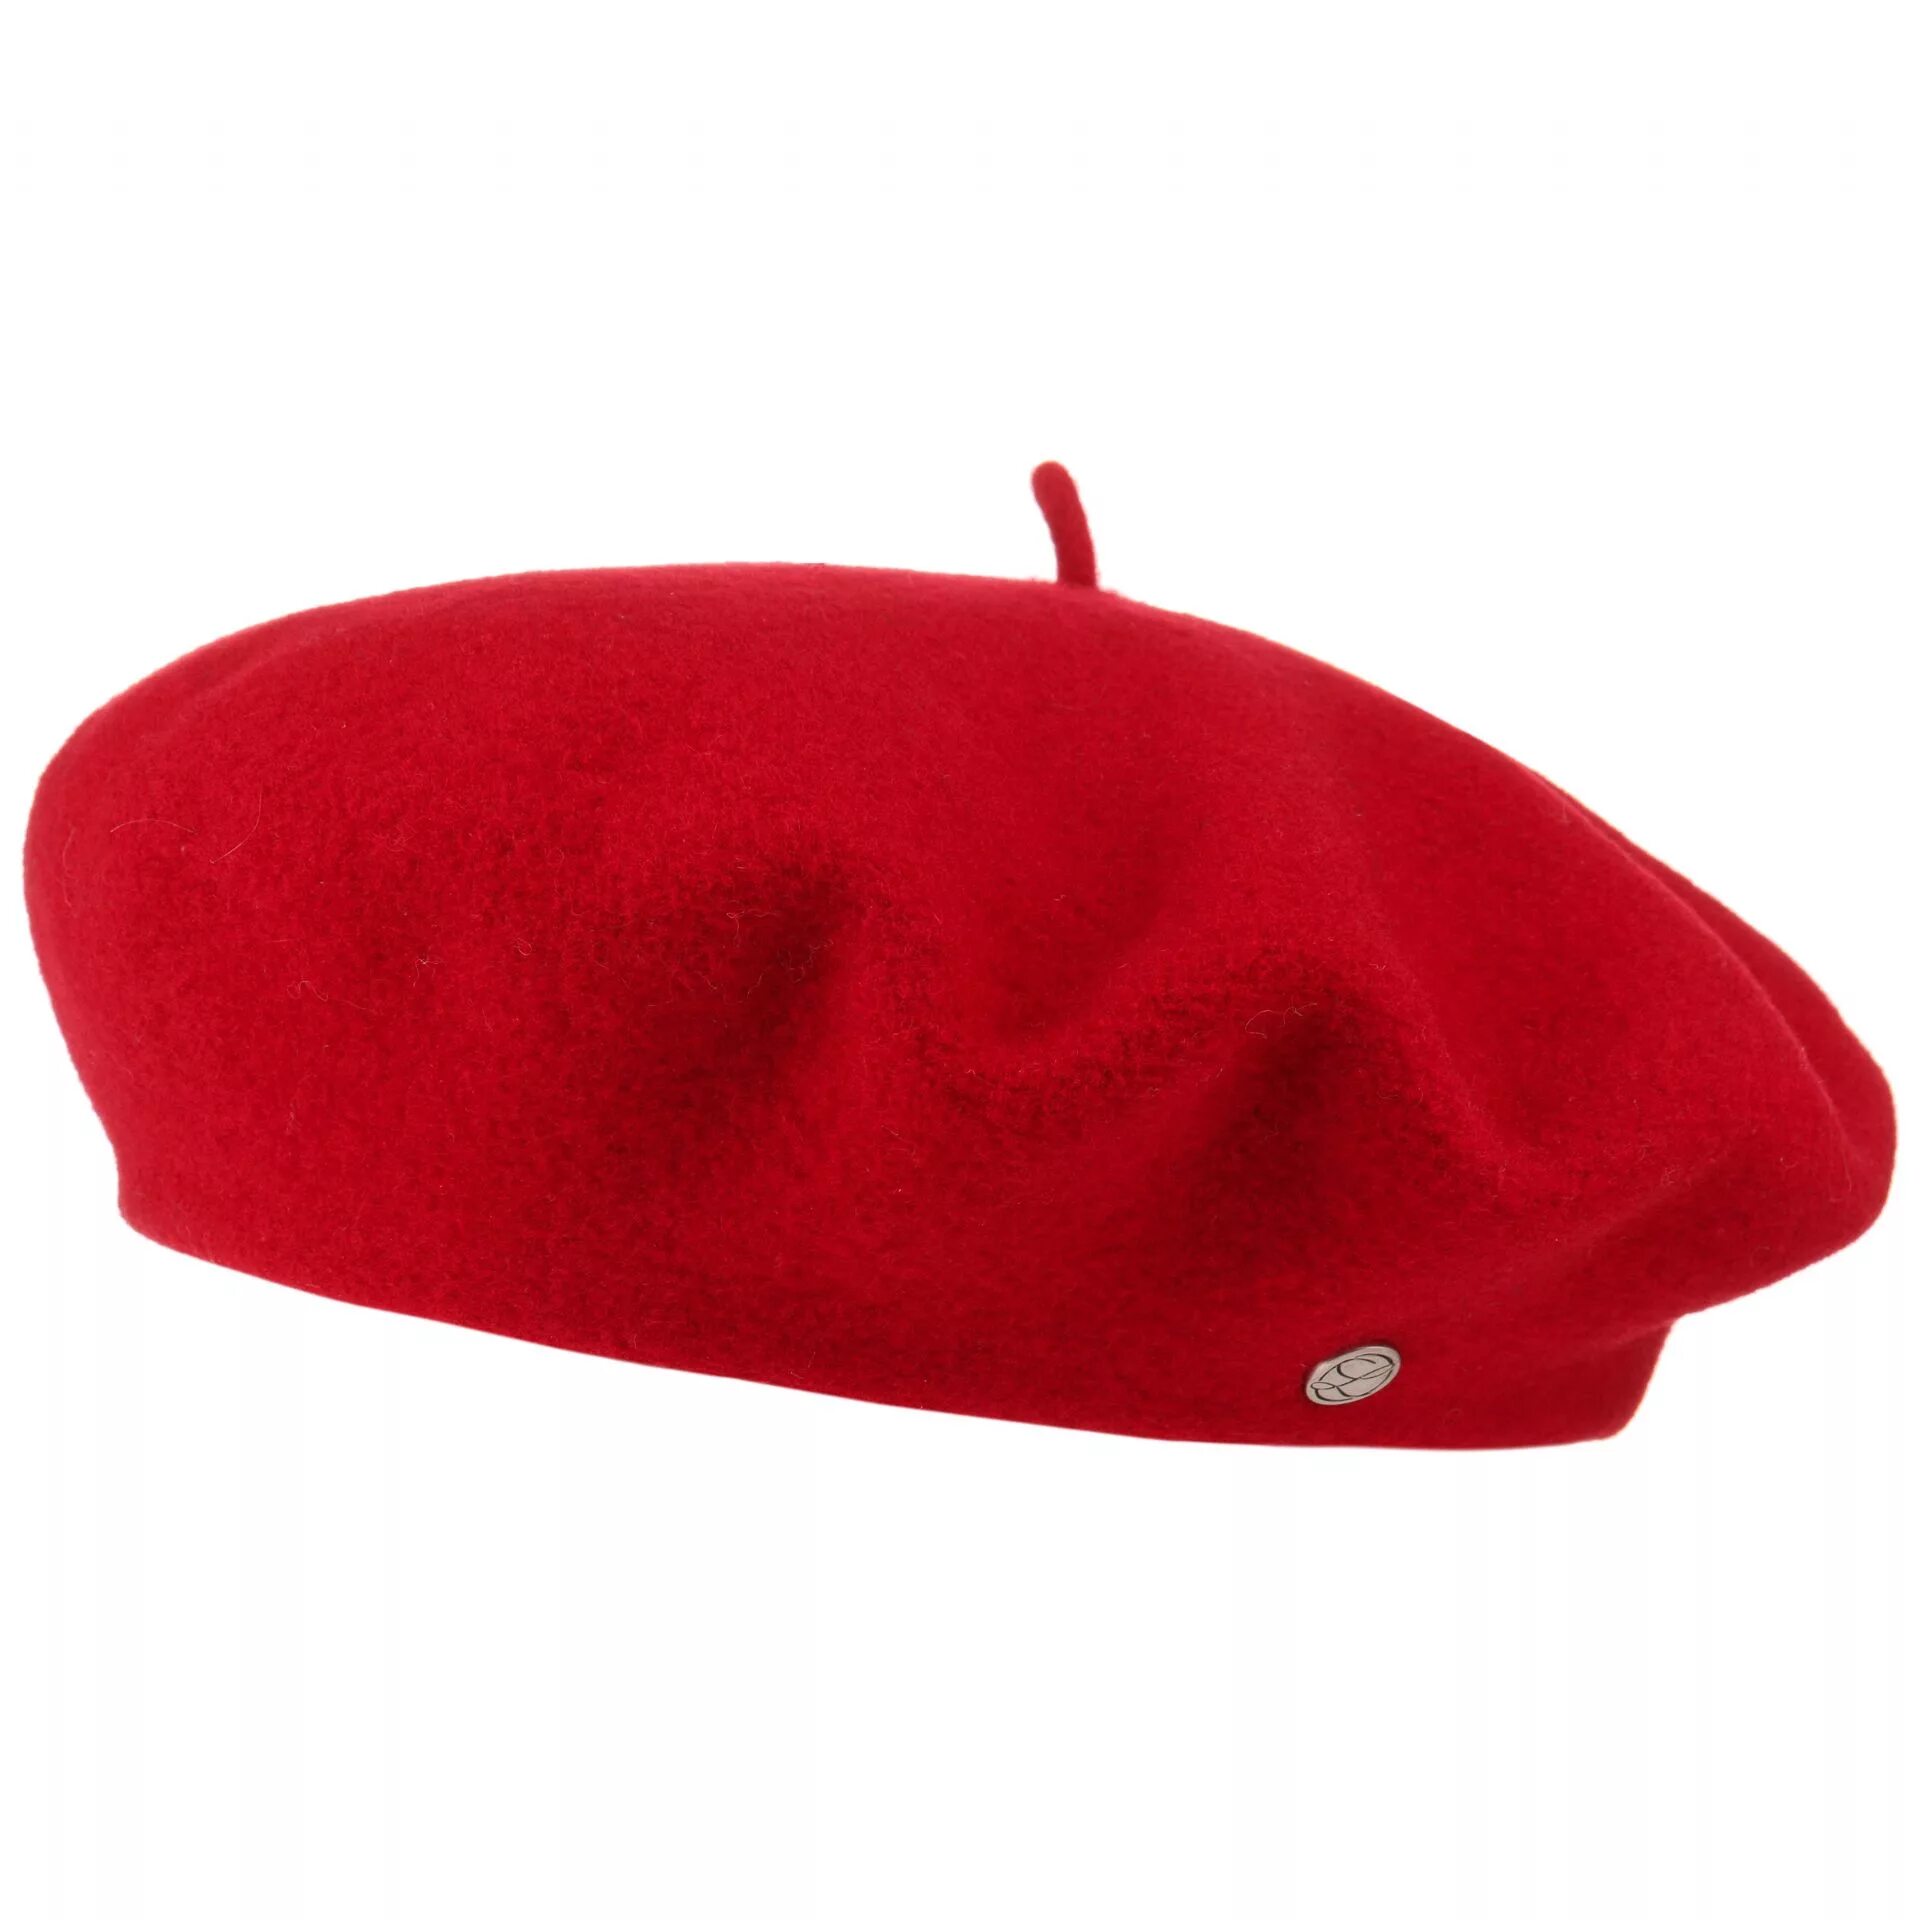 Кандибобер шапка. Кандибобер красный шапка. Берет красный. Французская шапочка.